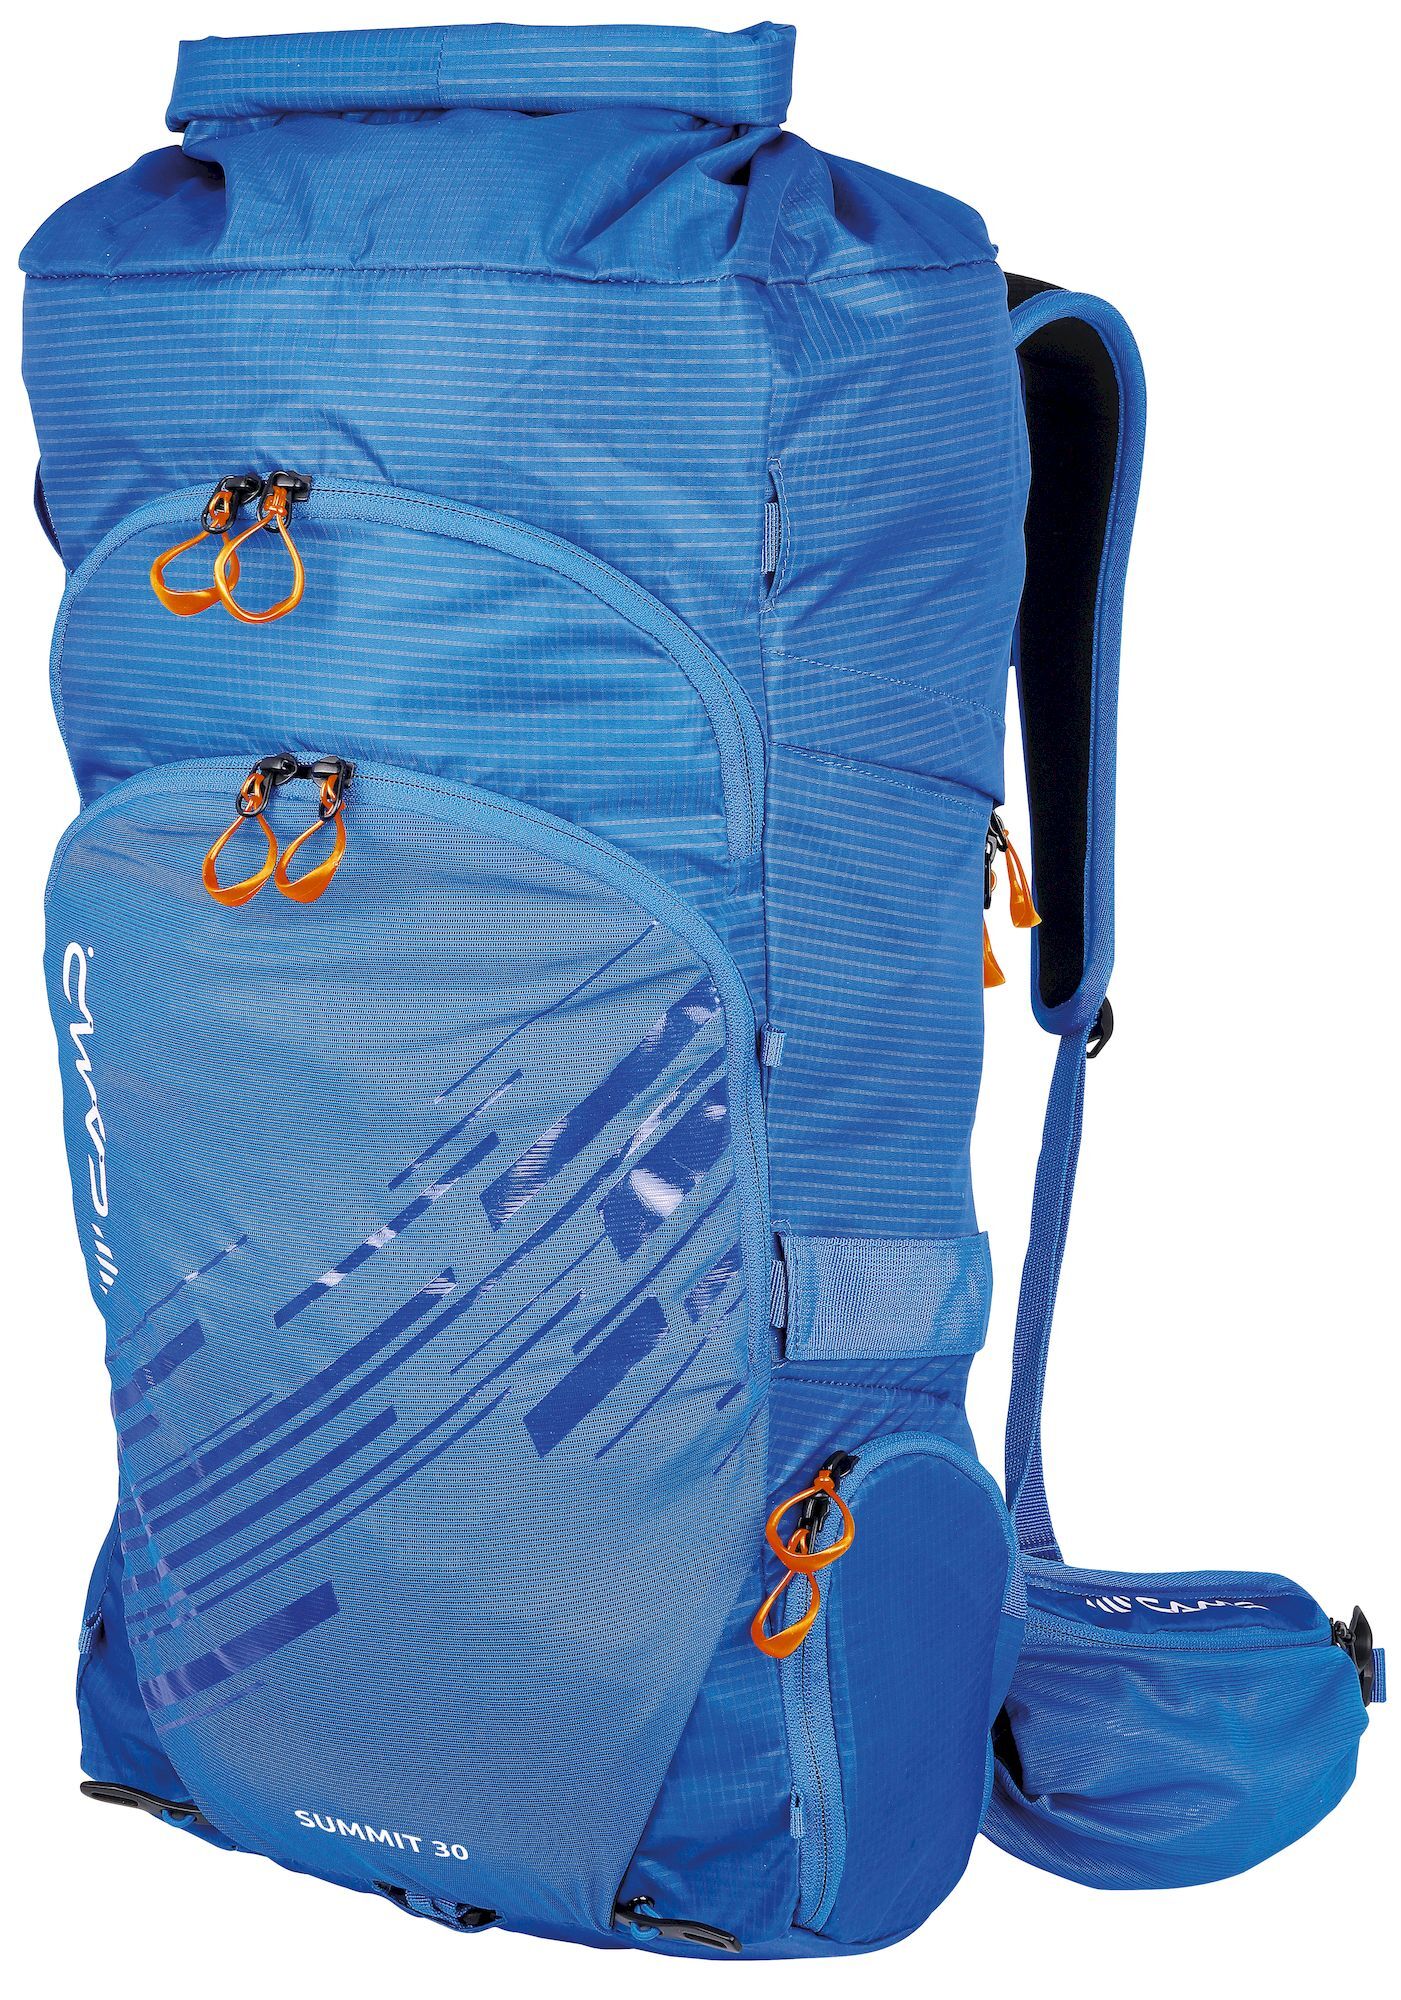 Camp Summit 30 - Mountaineering backpack | Hardloop